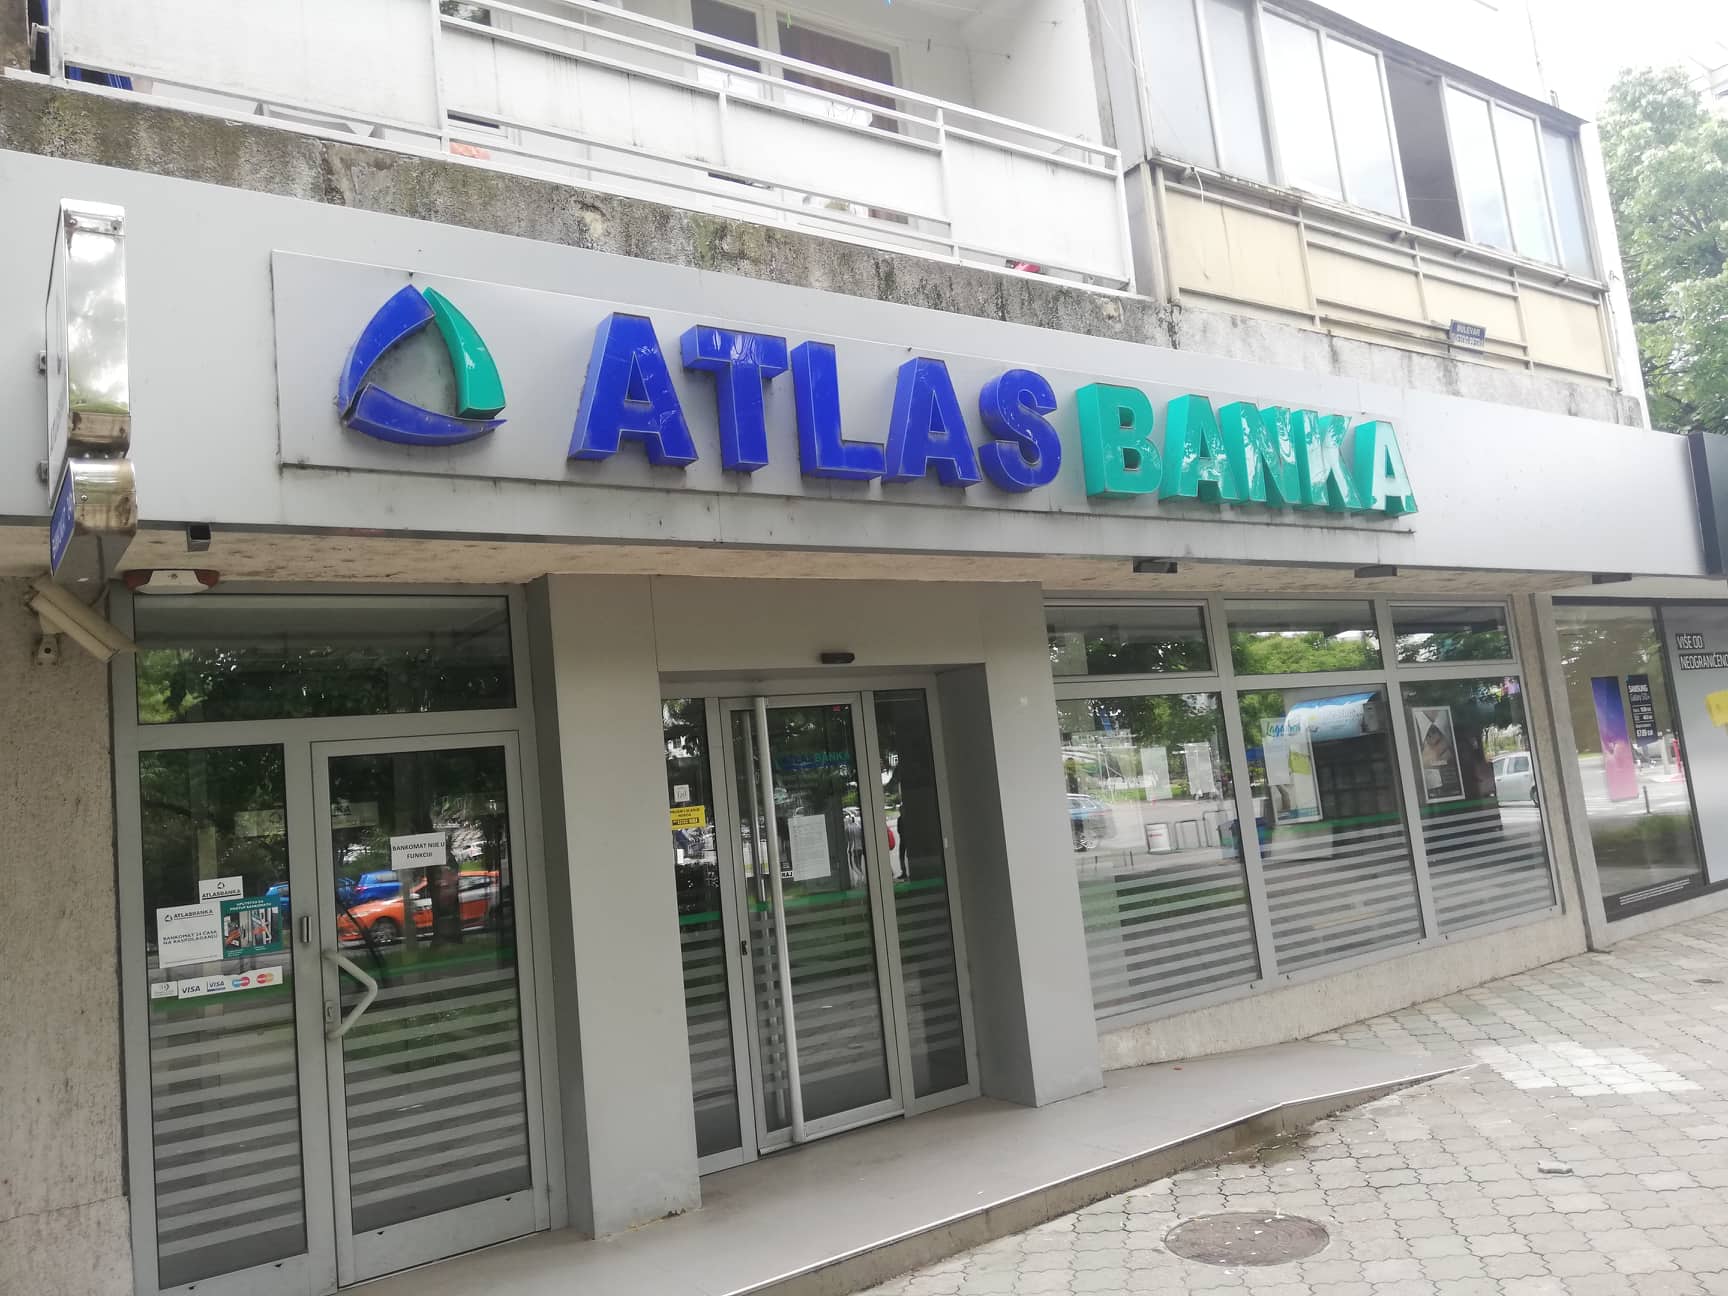 Atlas penzija ostala bez dozvole za rad